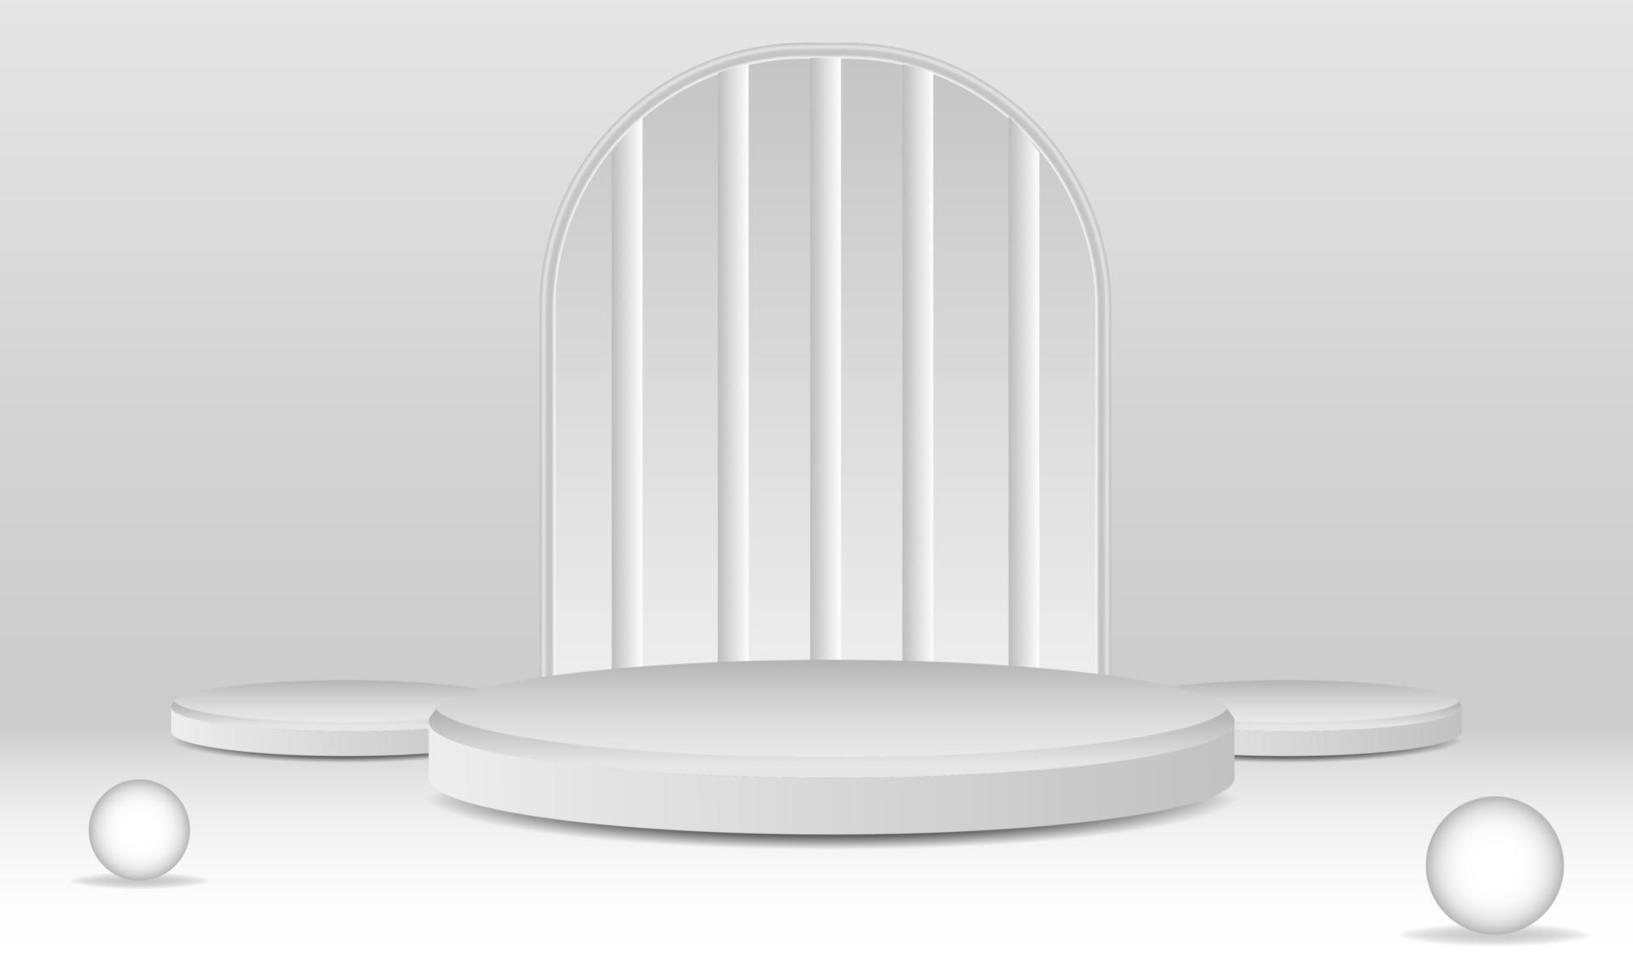 piedestal podium mockup. abstrakt vit 3d vektor rum med realistisk vit cylinder piedestal podium uppsättning. minimal scen för produkt visa presentation. vektor geometrisk plattform. skede för monter.